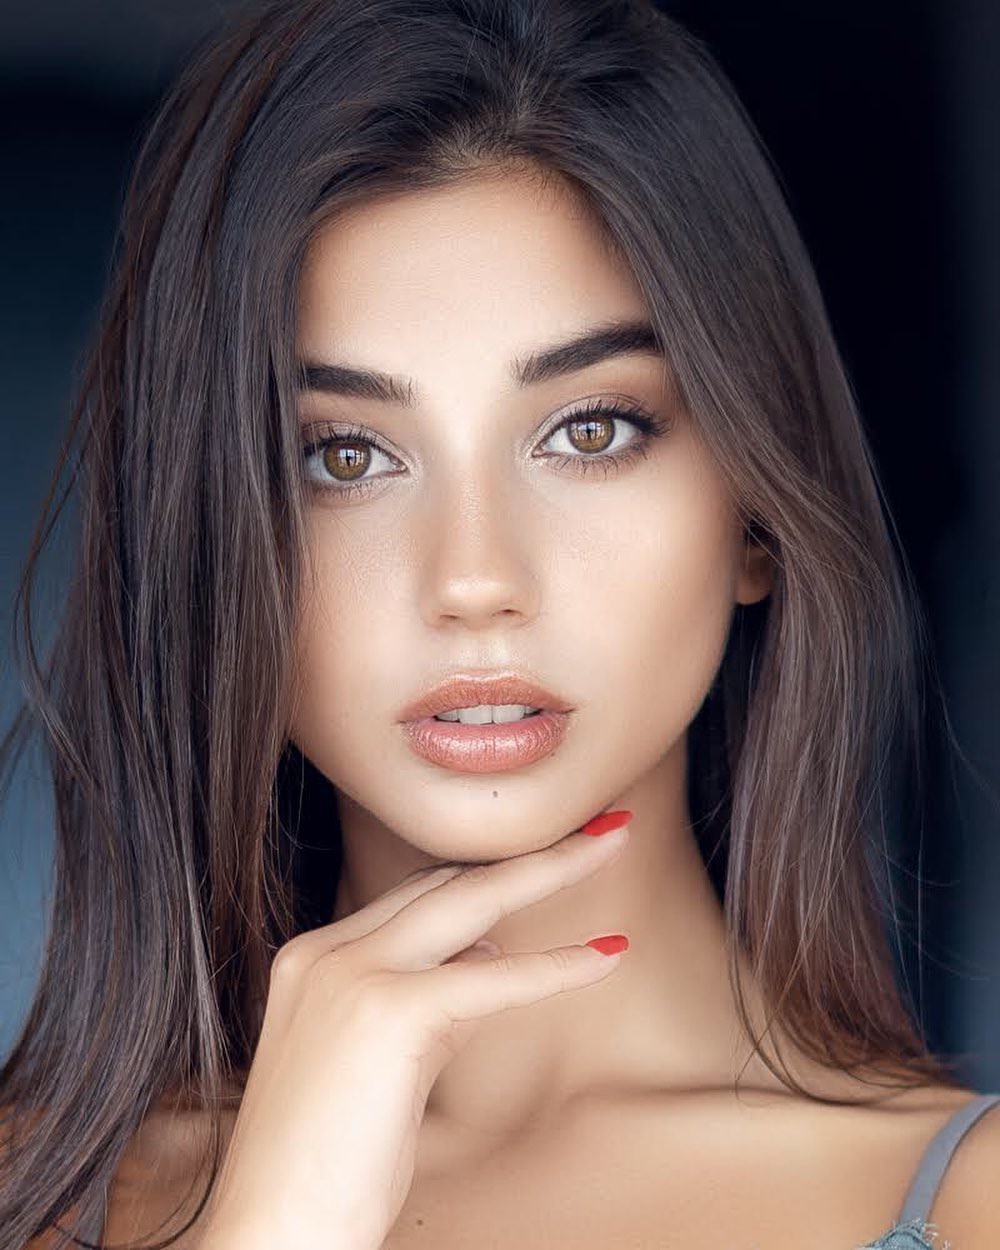 Maja Strojek Pretty Face  Glossy Lips Cute Model  Pics 